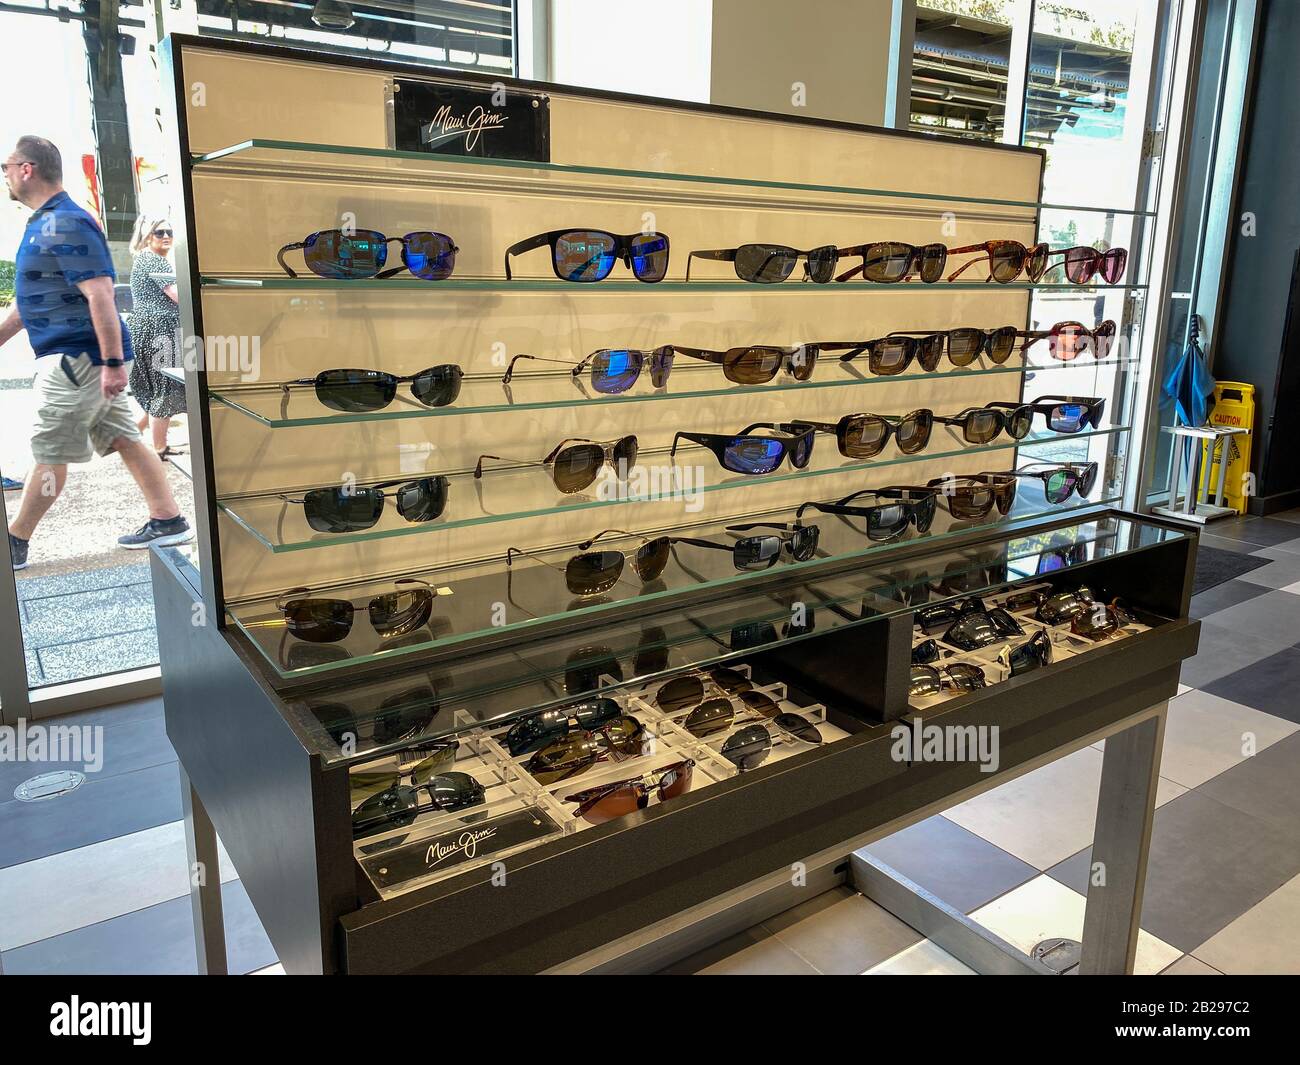 Orlando, FL/USA-2/17/20: Esposizione degli occhiali da sole Maui Jim presso il negozio al dettaglio Sunglass Hut in un centro commerciale. Il Sunglass Hut è un rivenditore internazionale di vetro solare Foto Stock